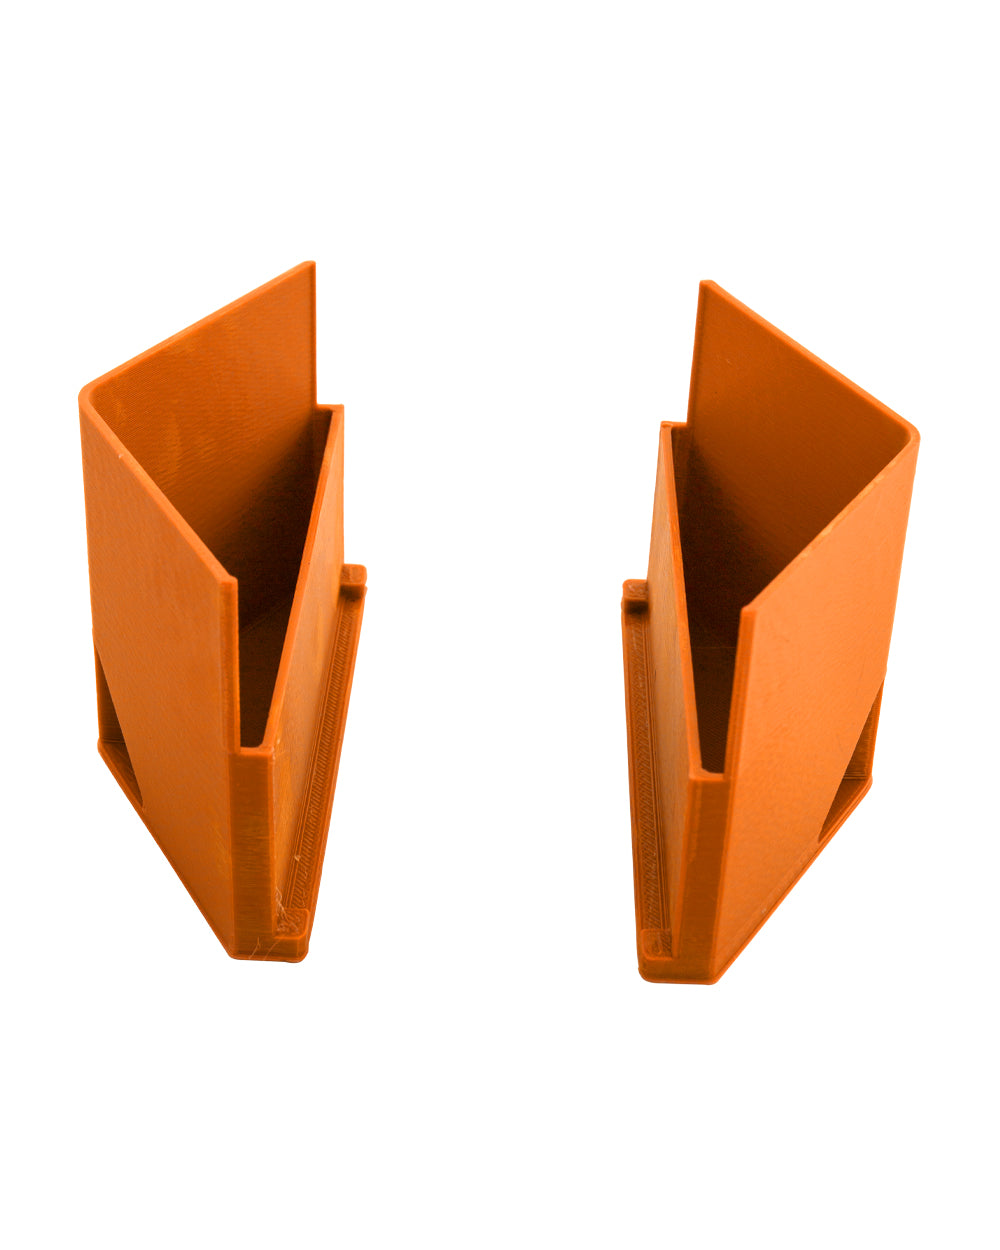 KING KONE | Orange Vibration Pre-Rolled Cones Filling Machine 84/98/109mm | Fill 169 Cones Per Run - 6